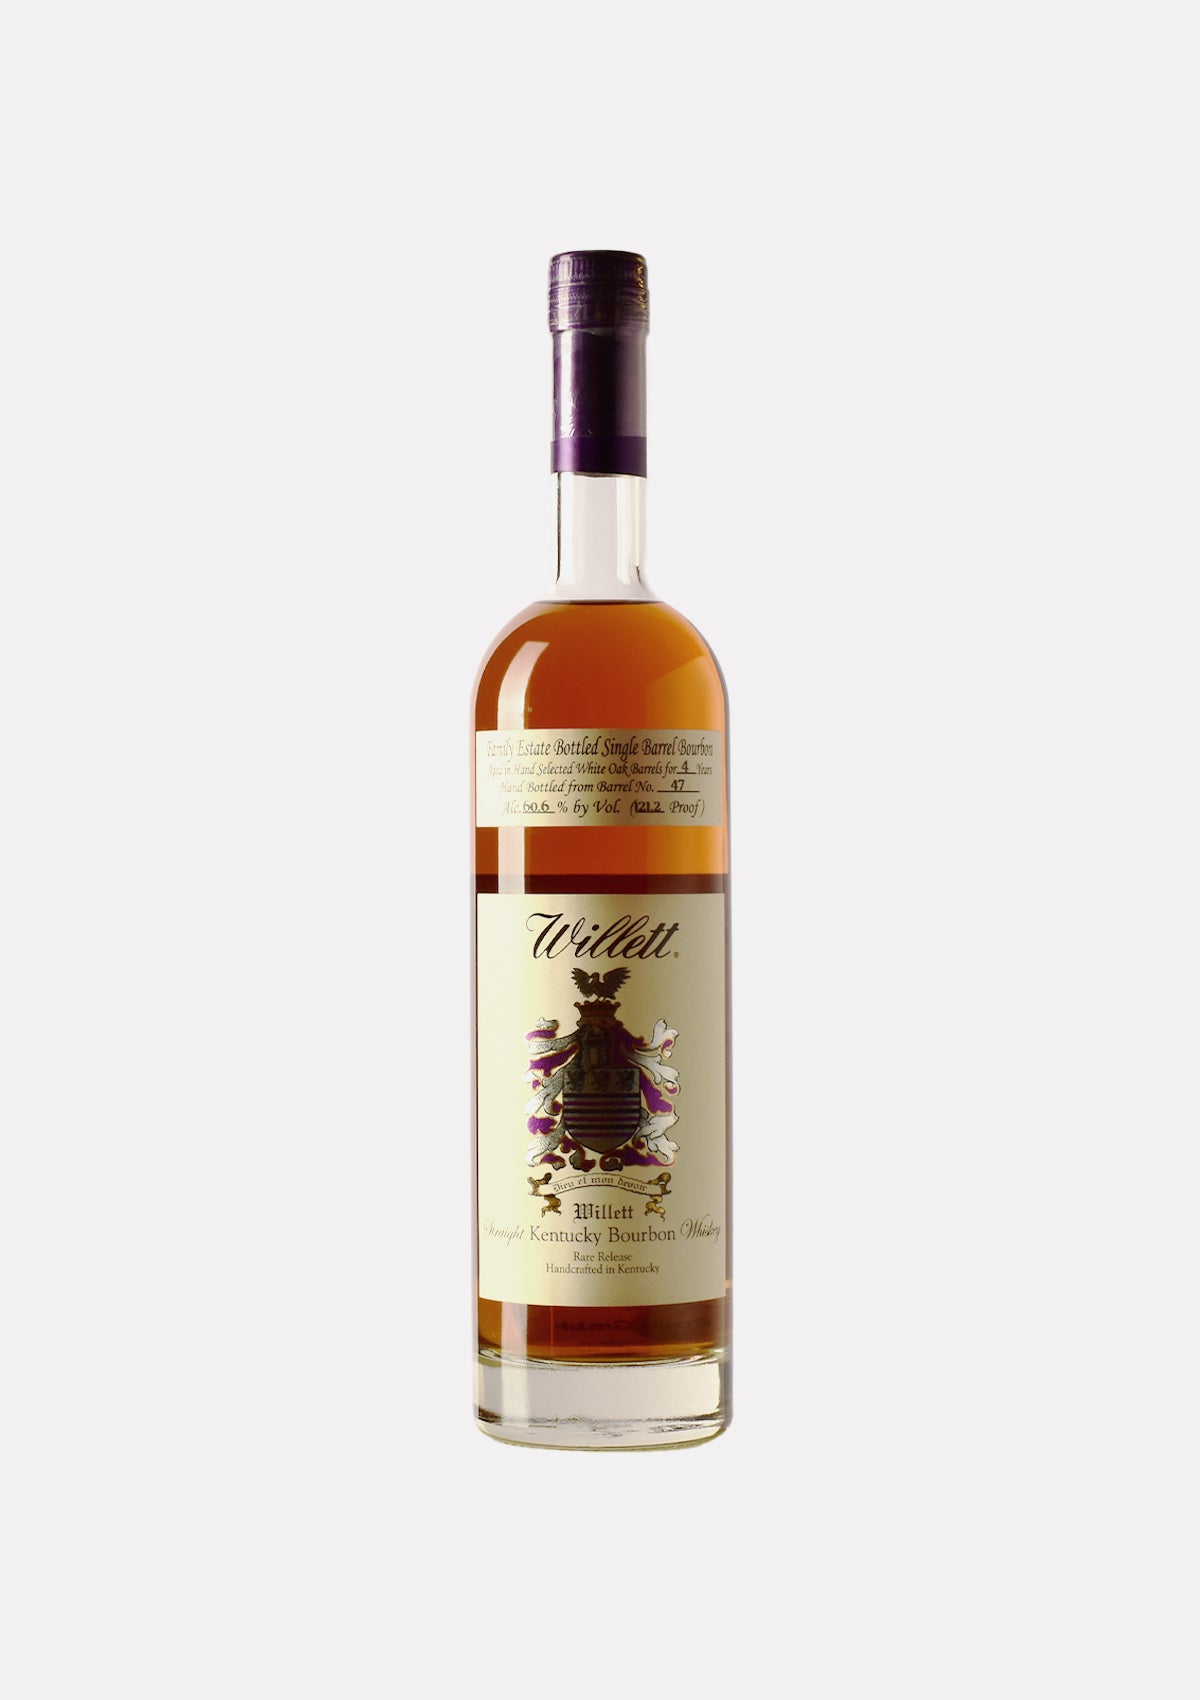 Willett Straight Kentucky Bourbon Whiskey 4 Jahre